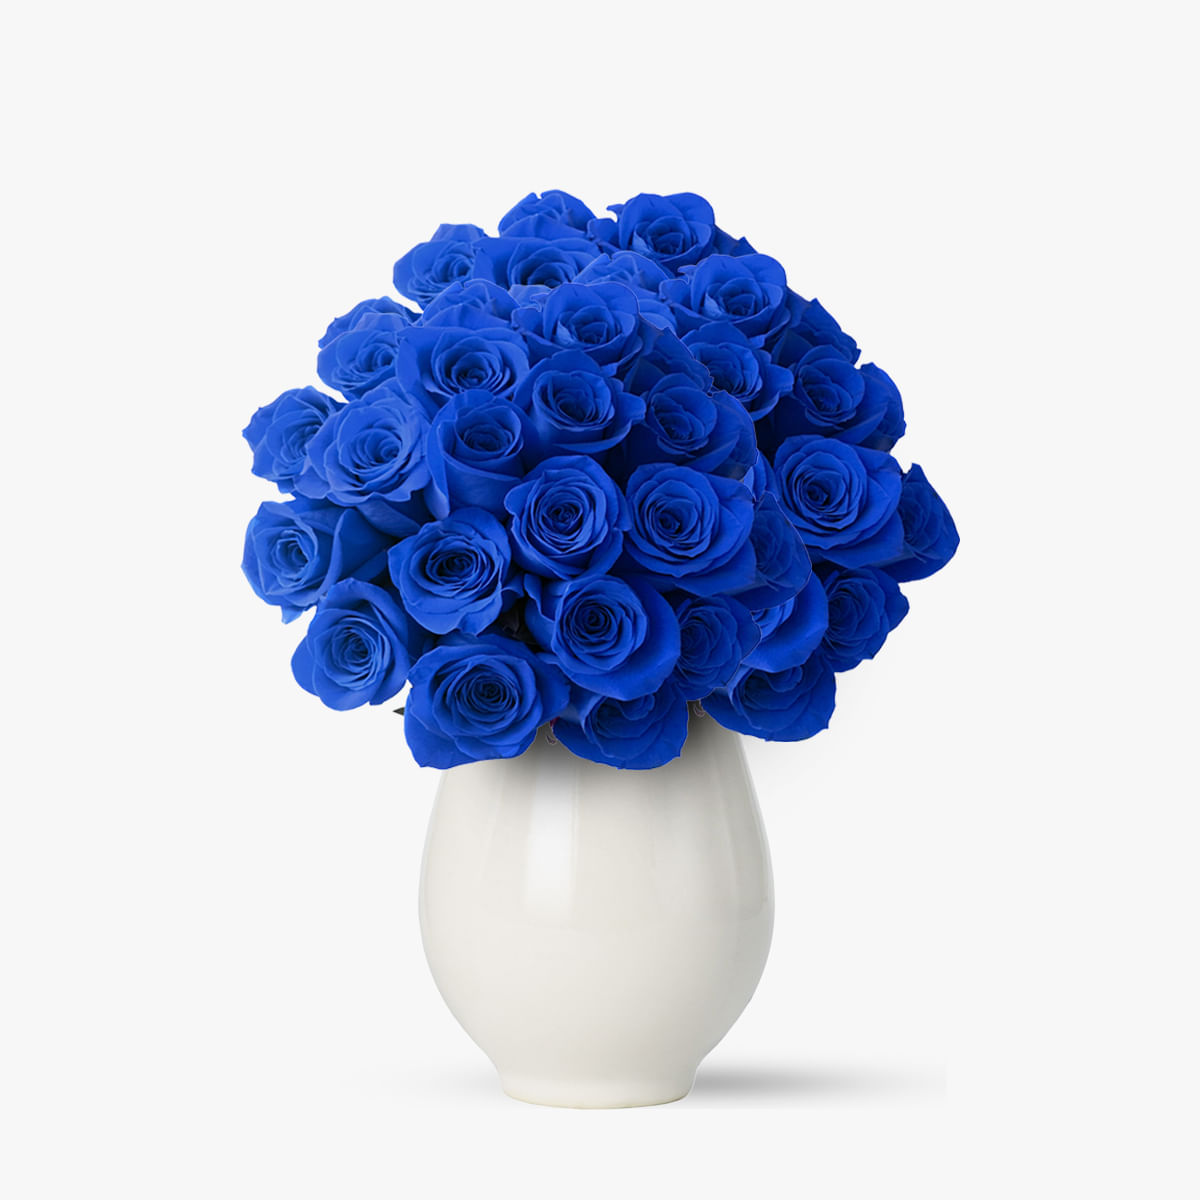 Buchet de 55 trandafiri albastri floria.ro